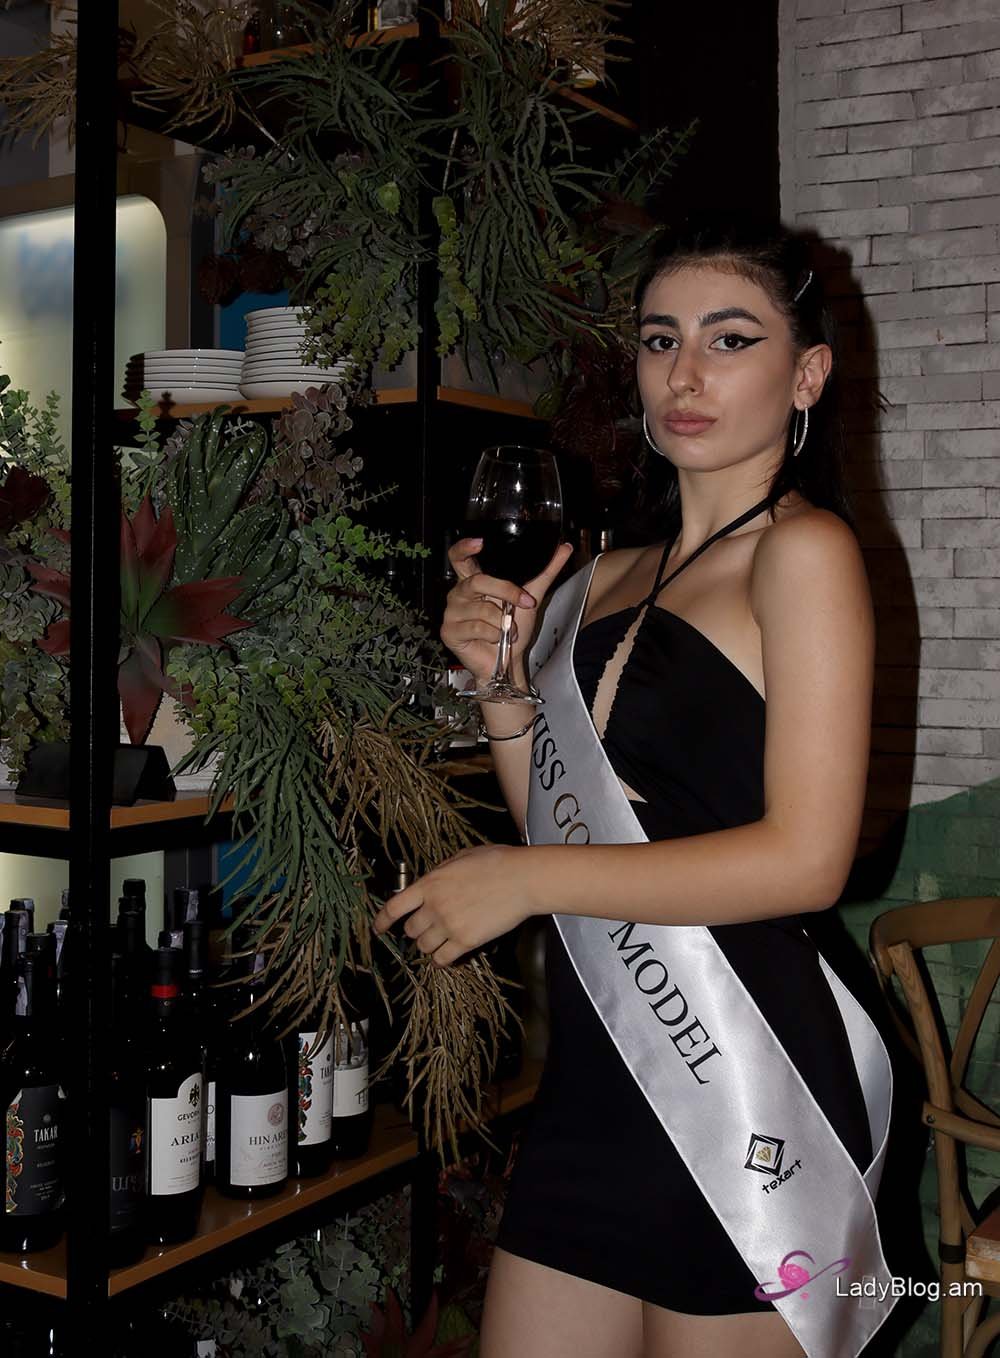 Miss Gold Model 2022, Վանեսսա Խանվելյան, Vanessa Khanvelyan